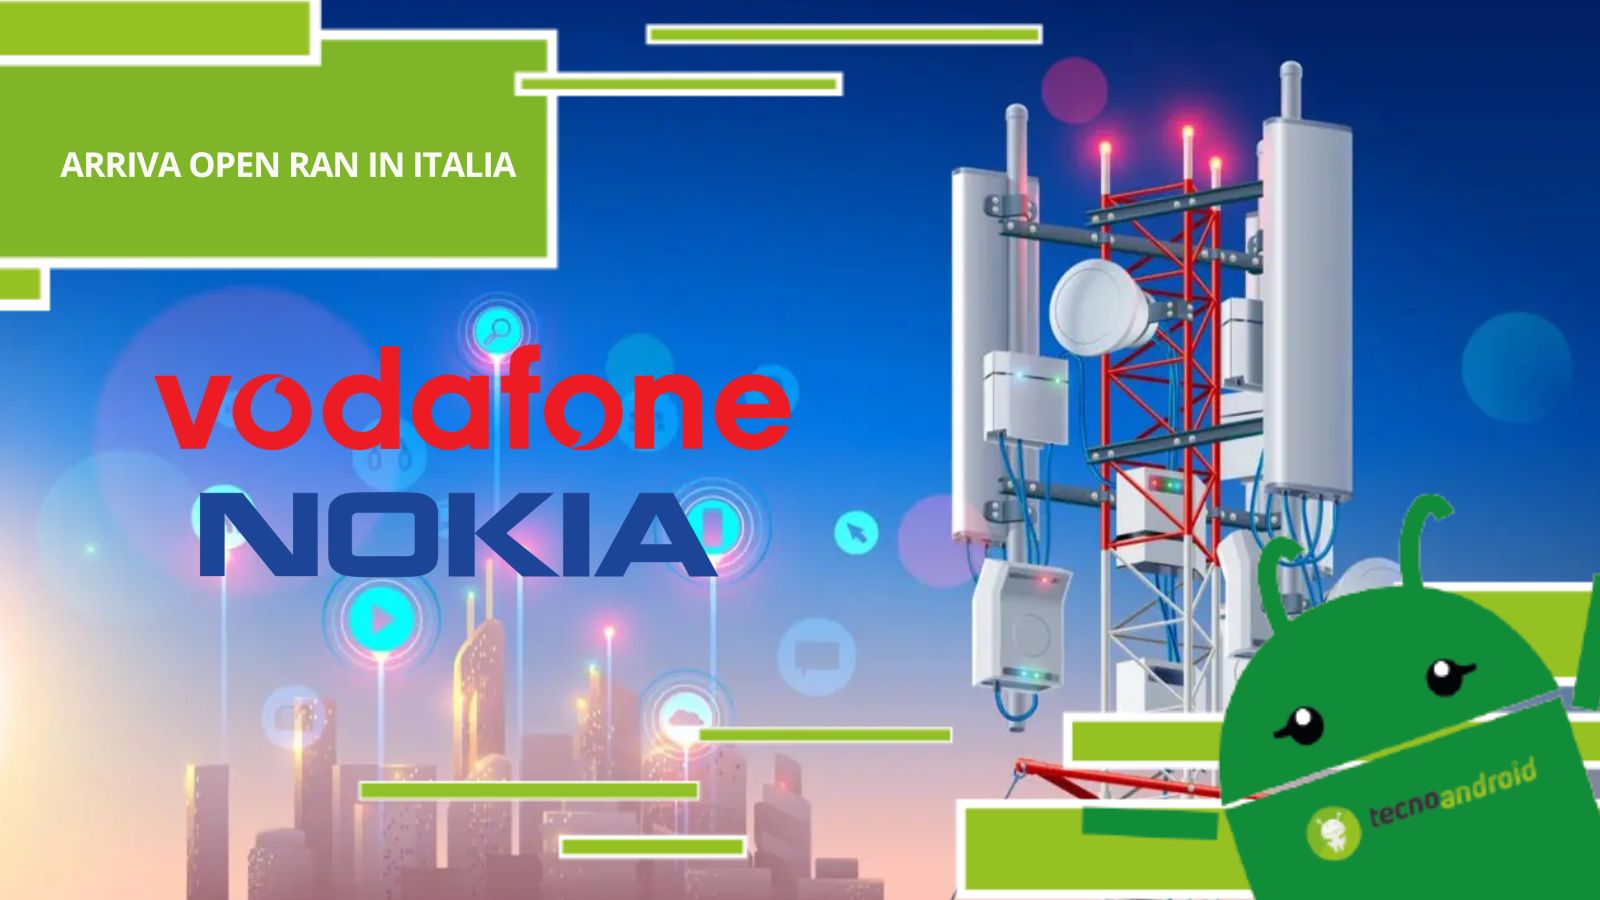 Vodafone e Nokia, dalla collaborazione nasce Open Ran mobile